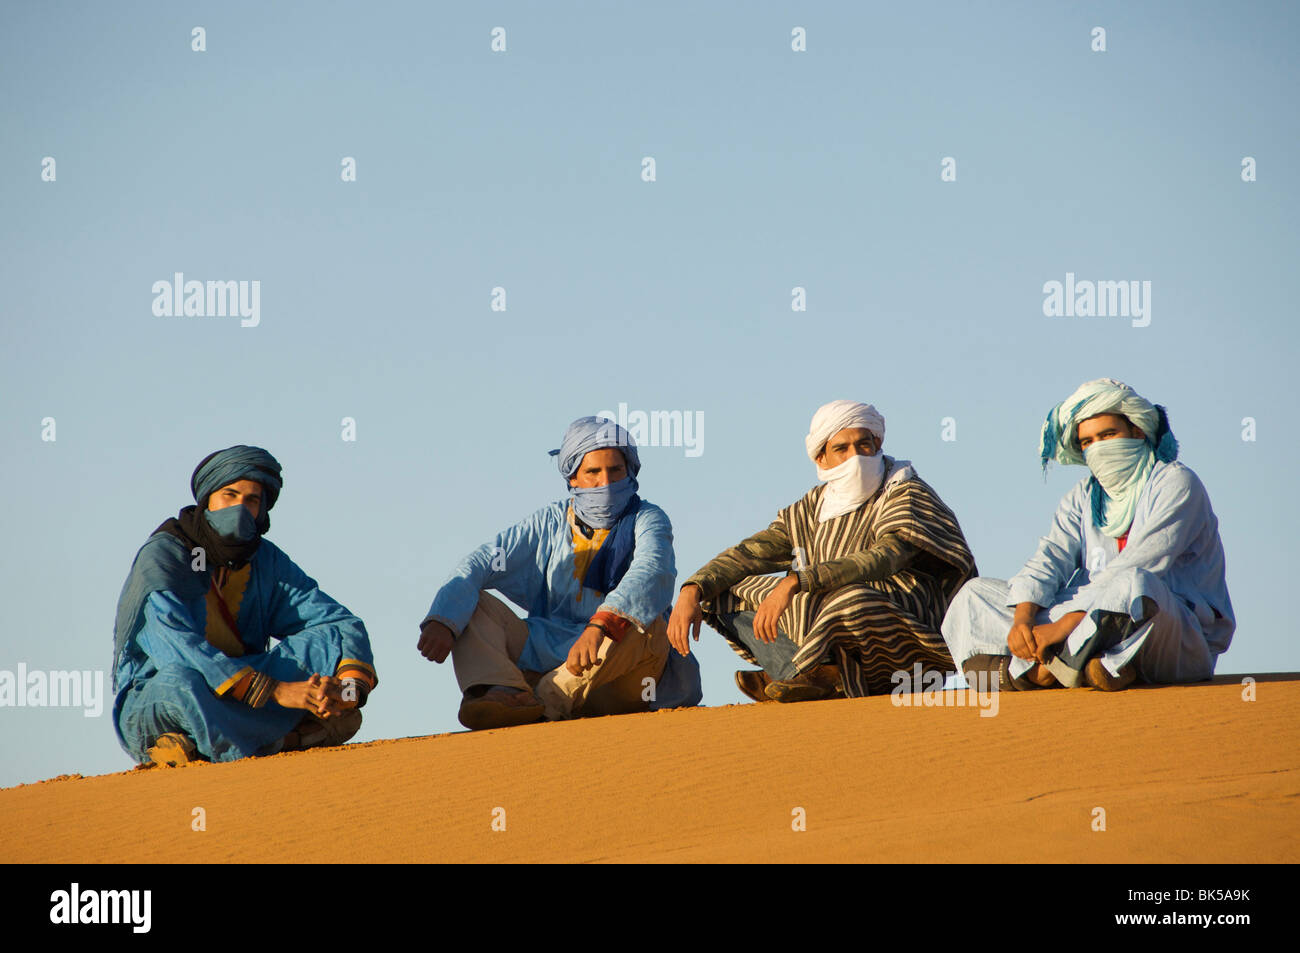 Portrait de quatre hommes touareg assis sur le sable dans un désert, désert du Sahara, Merzouga, Maroc Banque D'Images